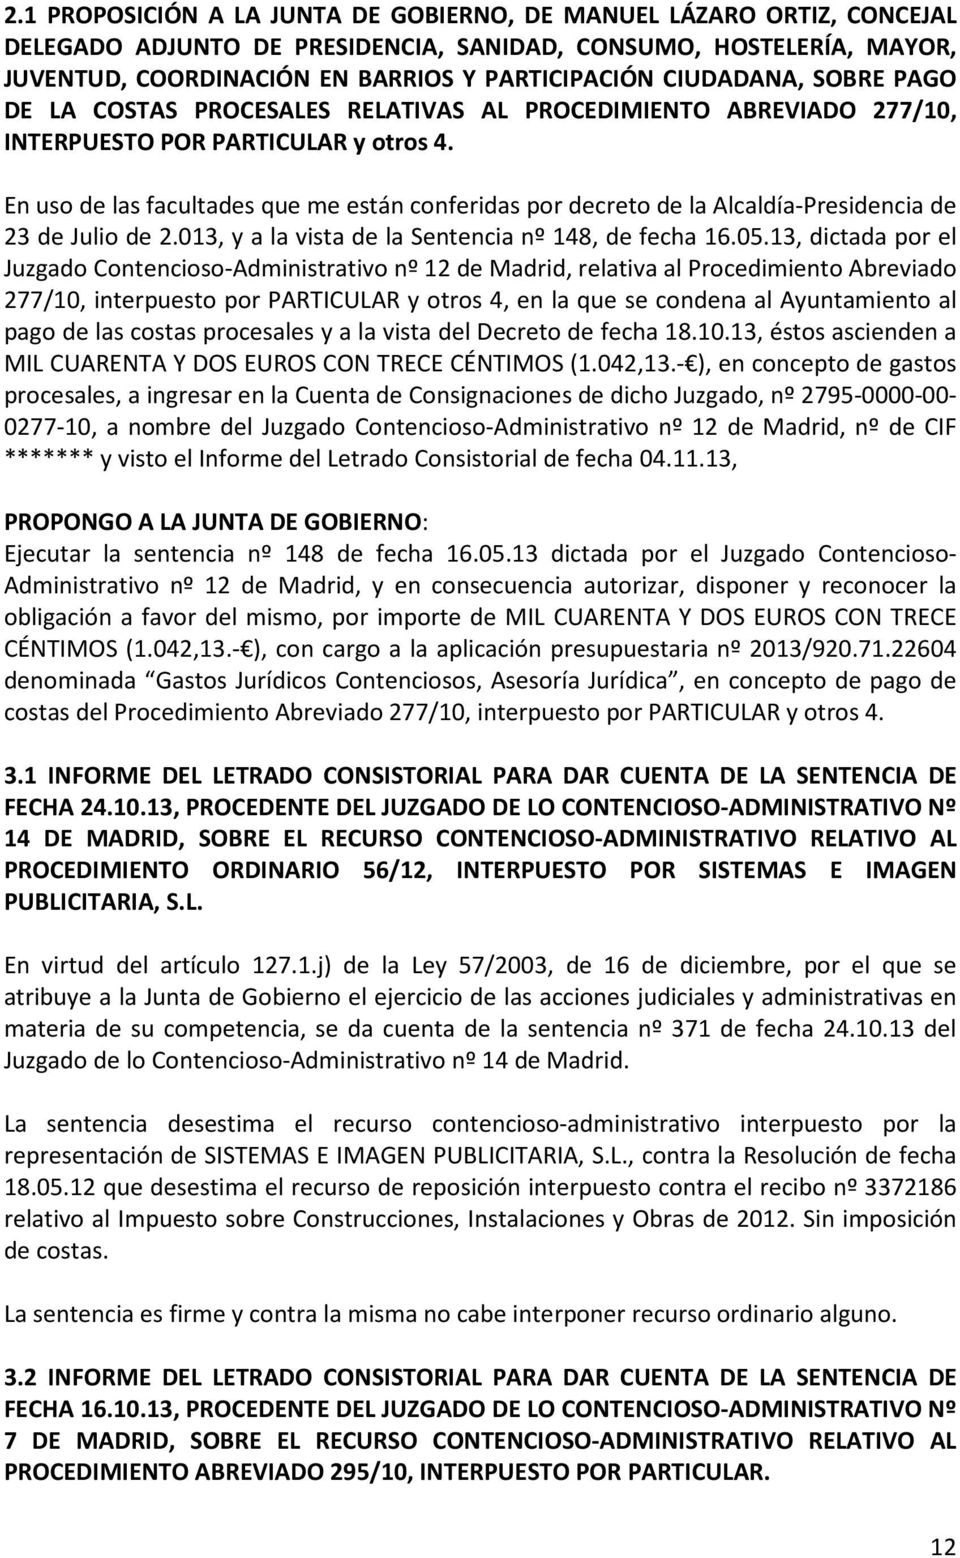 En uso de las facultades que me están conferidas por decreto de la Alcaldía-Presidencia de 23 de Julio de 2.013, y a la vista de la Sentencia nº 148, de fecha 16.05.